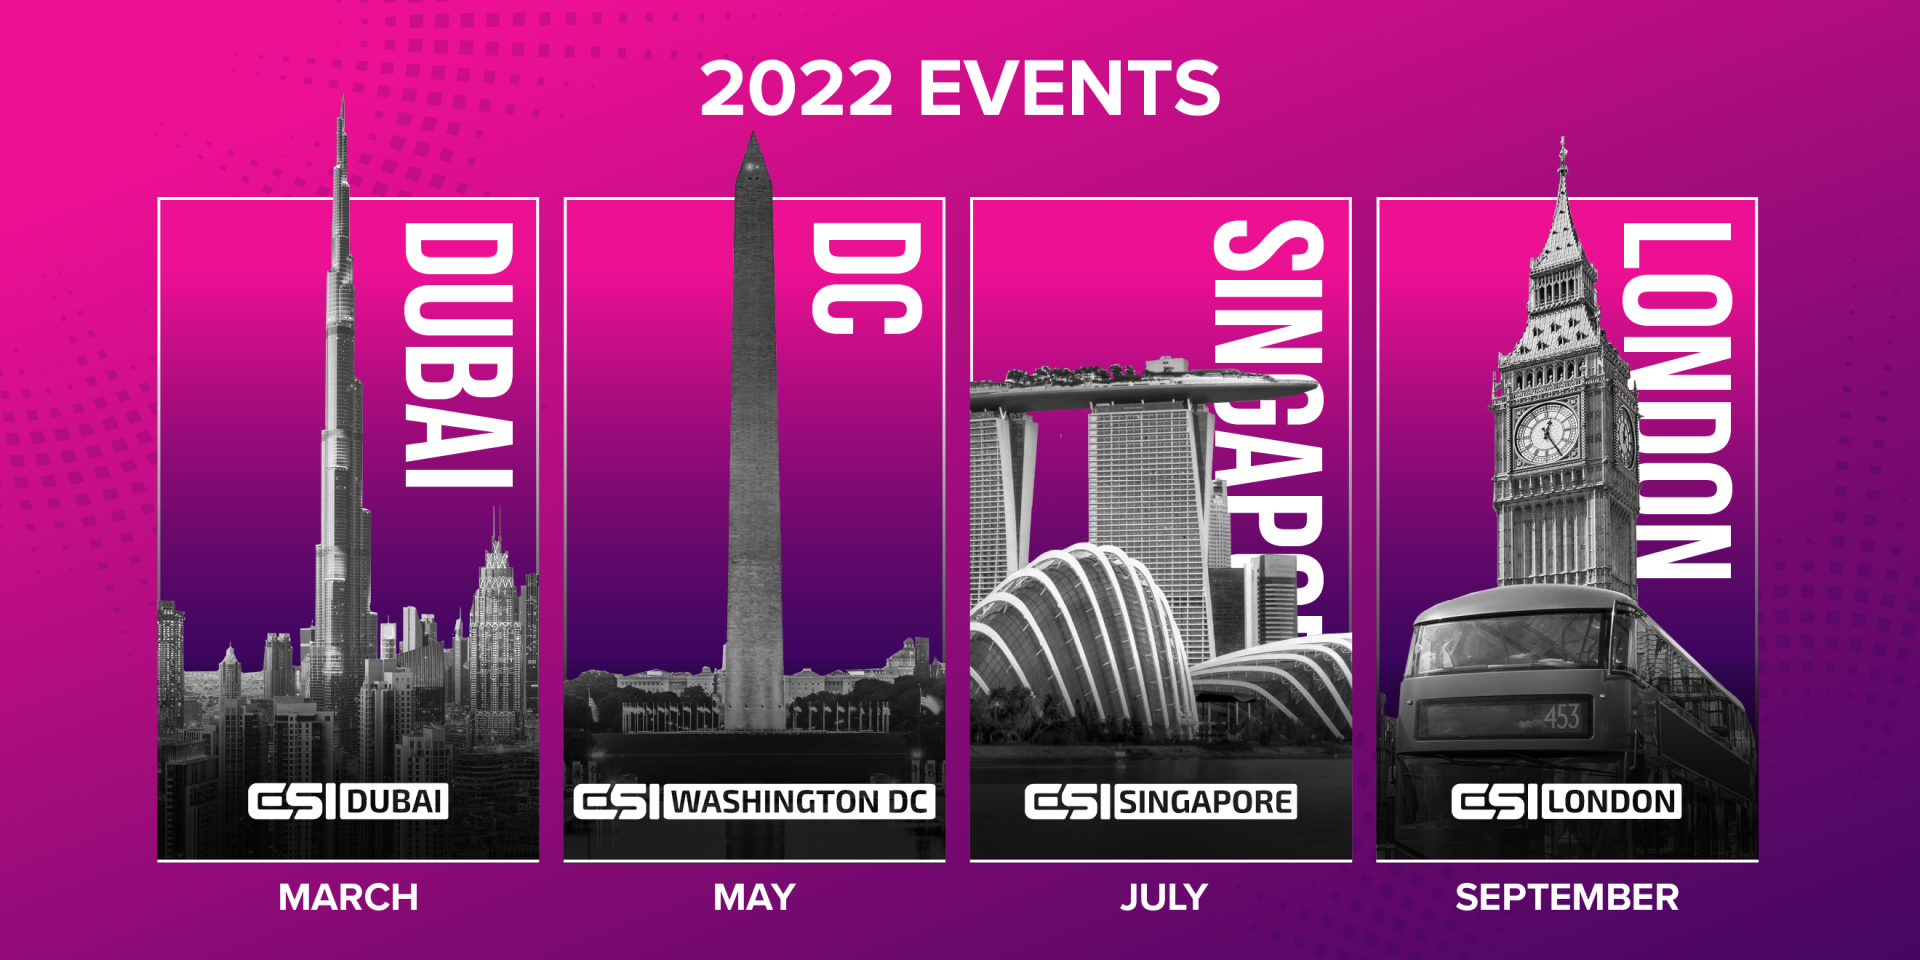 Csi Calendar Spring 2022 Esi Announces 2022 Events Calendar, Dubai, Dc, Singapore, London - Esports  Insider